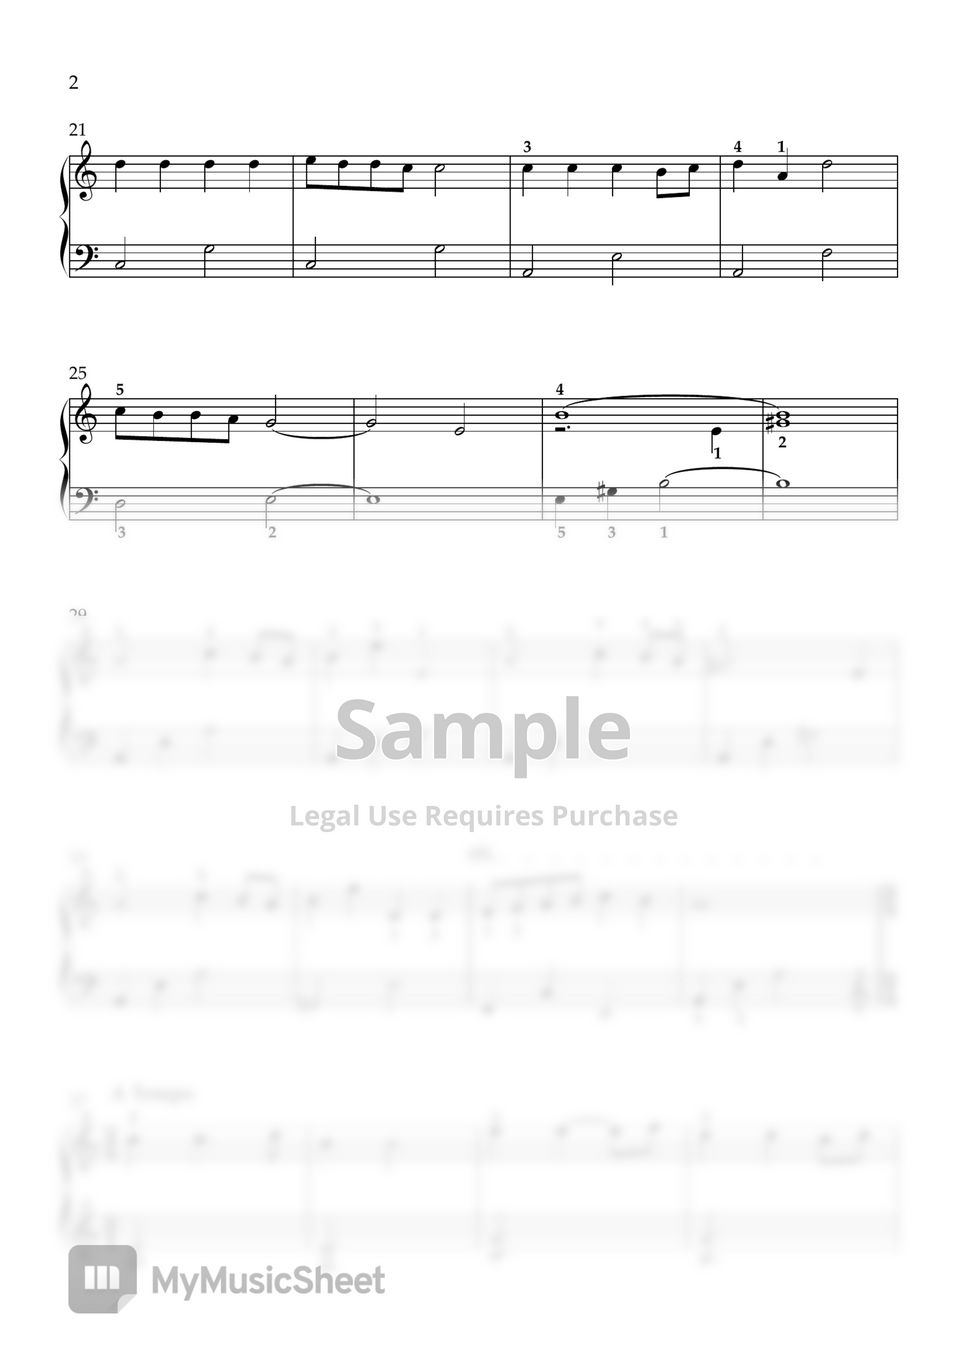 바람의계곡 나우시카 OST - 나우시카 레퀴엠 (쉬움, 작은손 가능) by DOLLPIANO